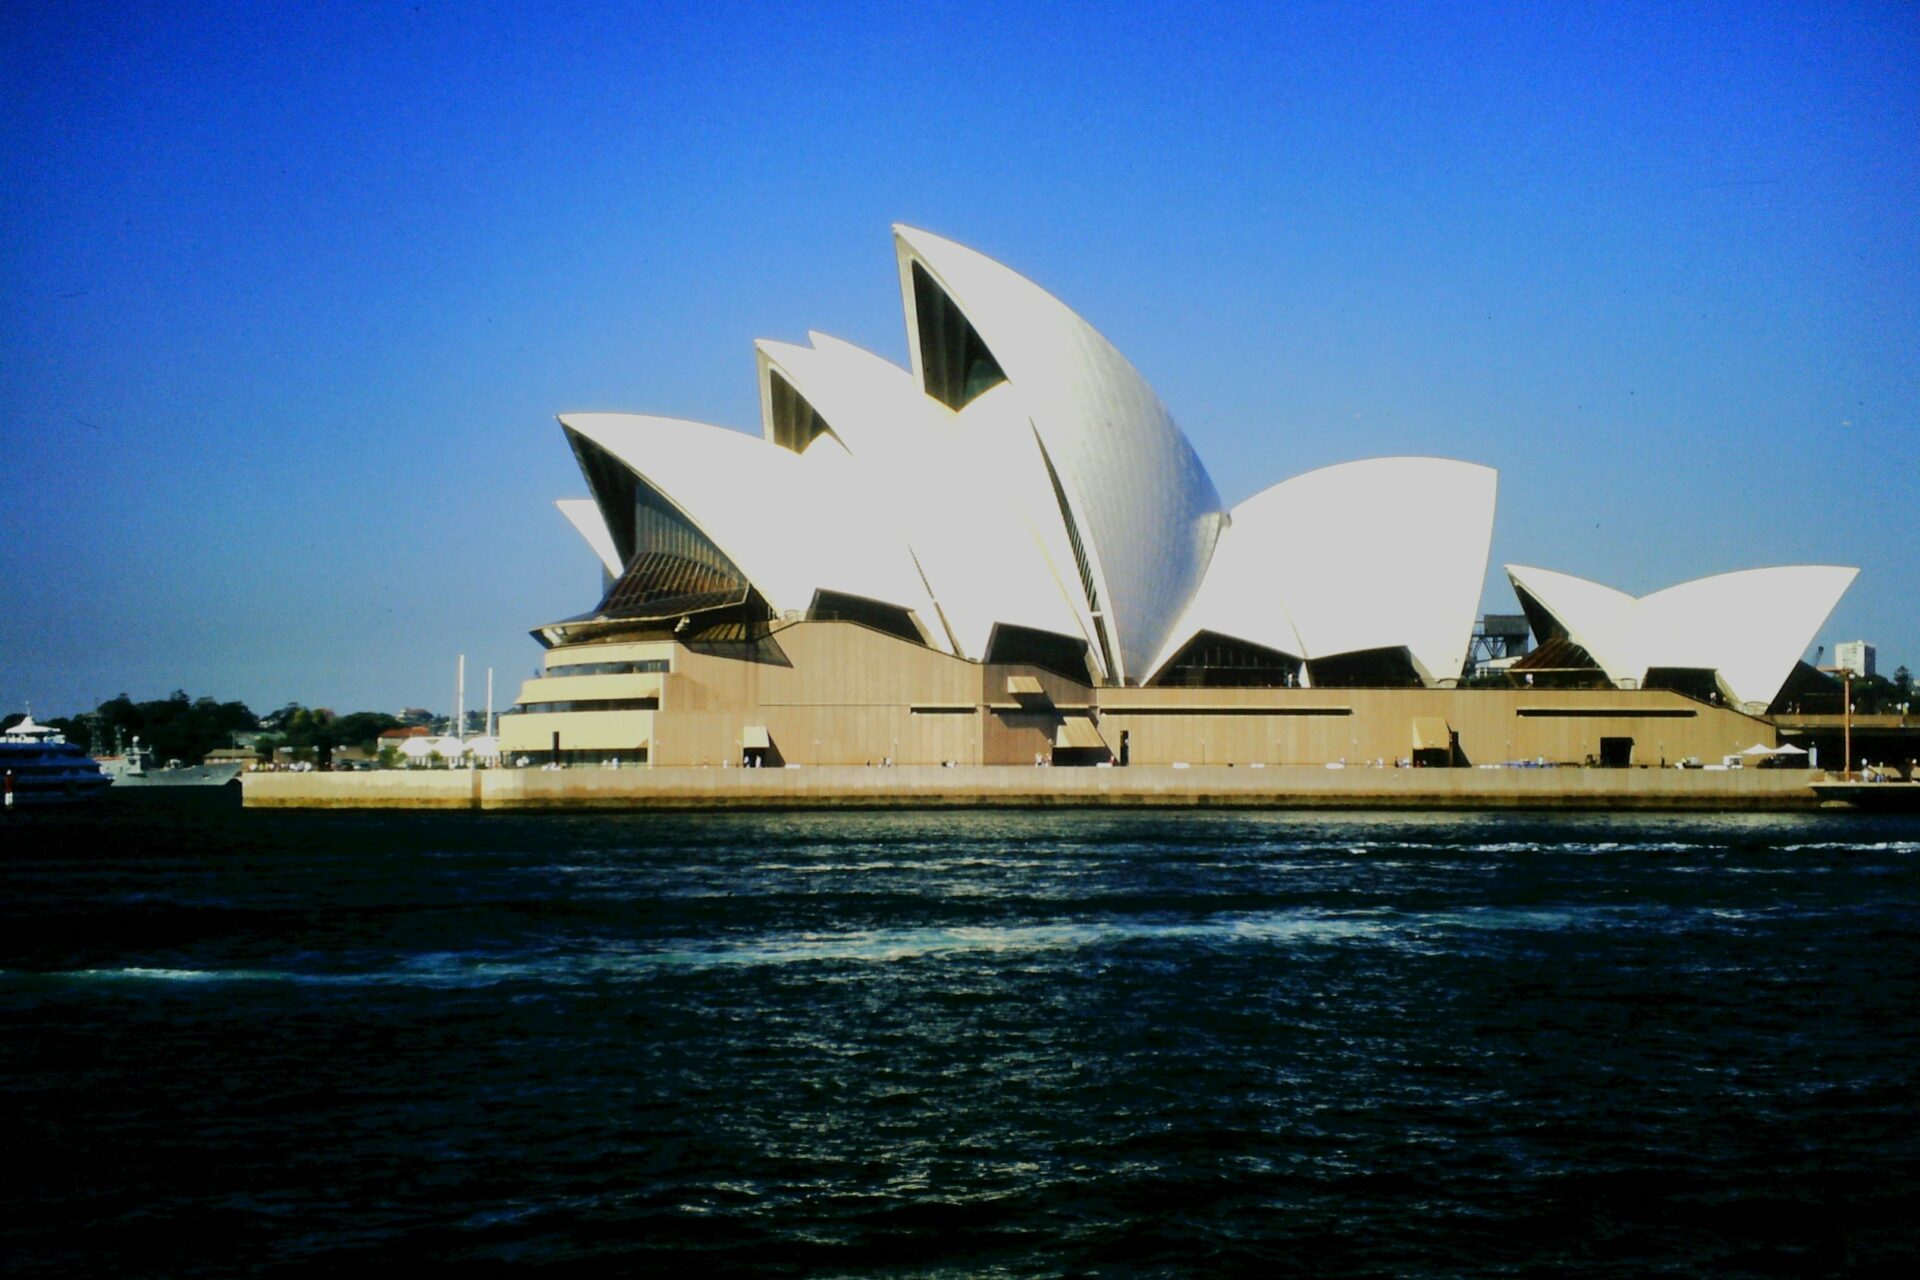 Bucket List Urlaub Australien bei REISEBÜRO Wache buchen; im Bild: Die Oper von Sydney in ihrer extravaganten Form